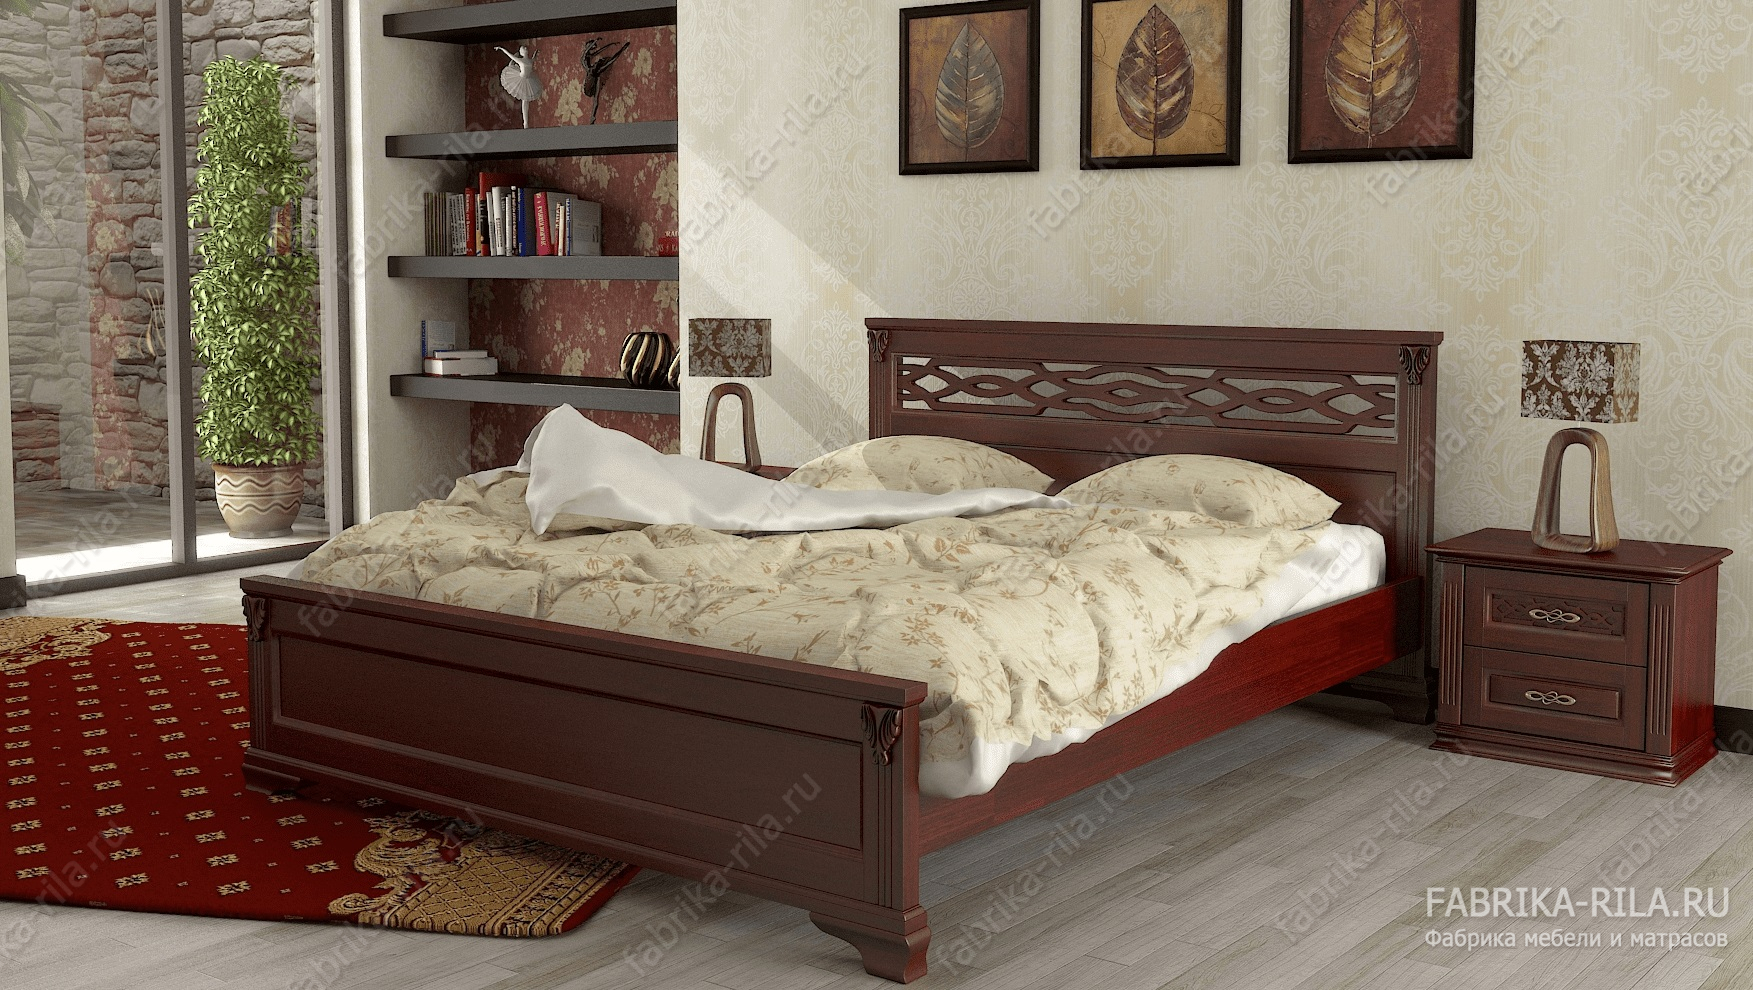 Кровать Lirоna 2 — 120x190 см. из сосны